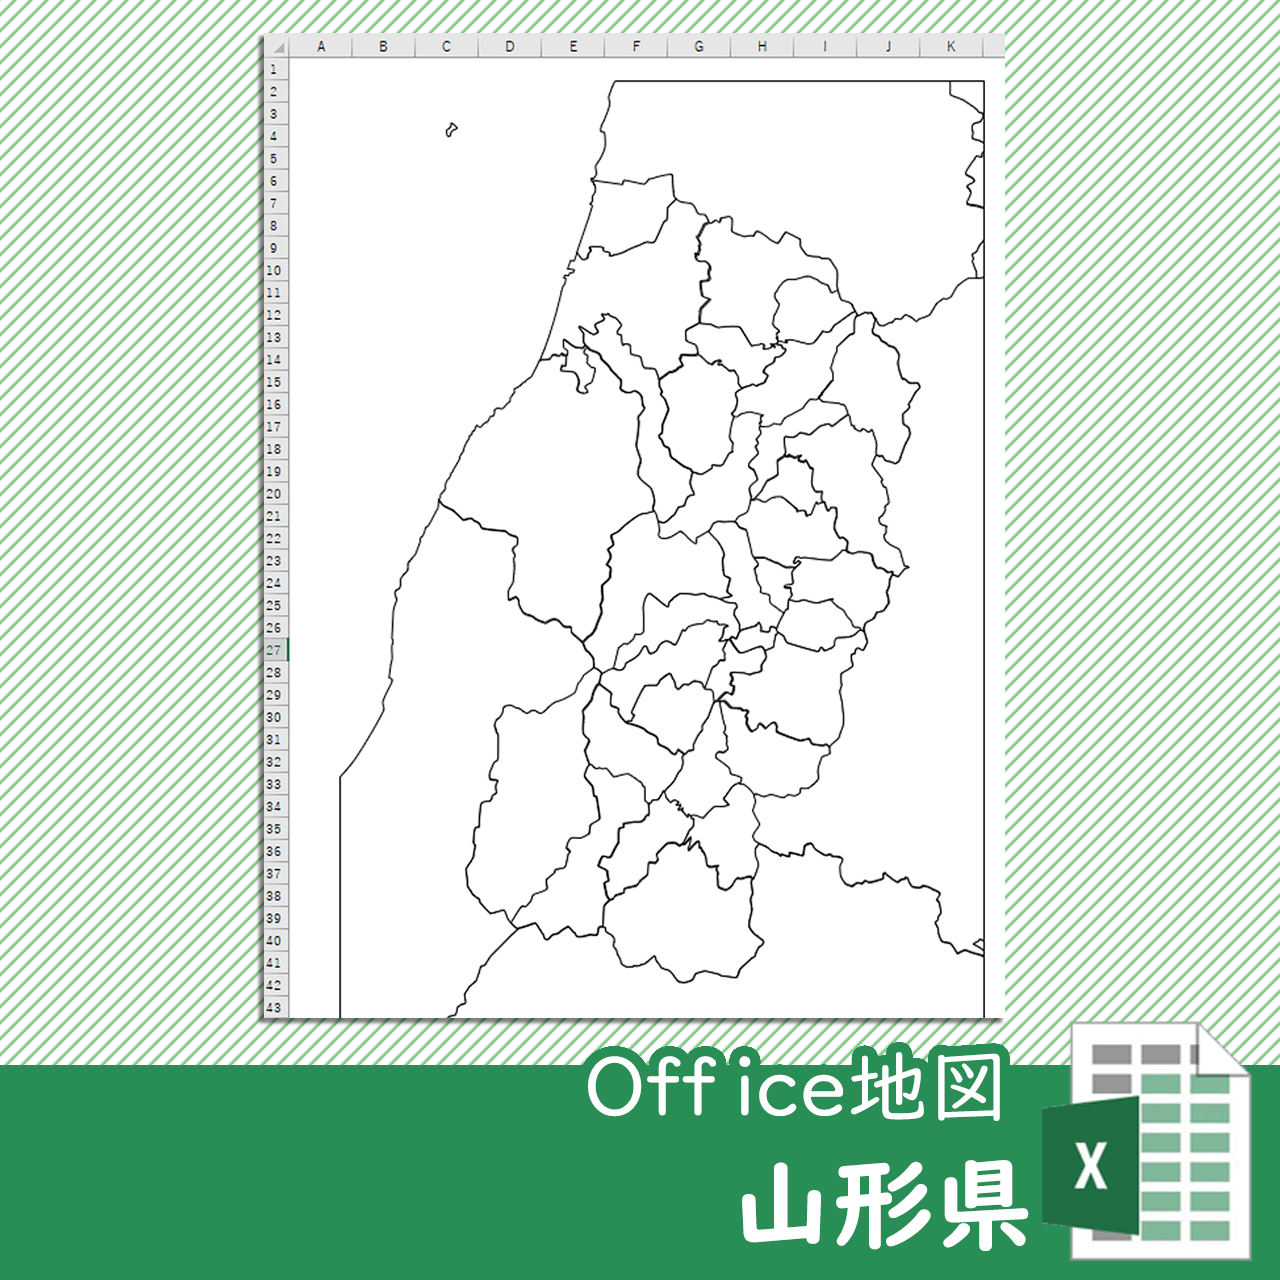 山形県のoffice地図